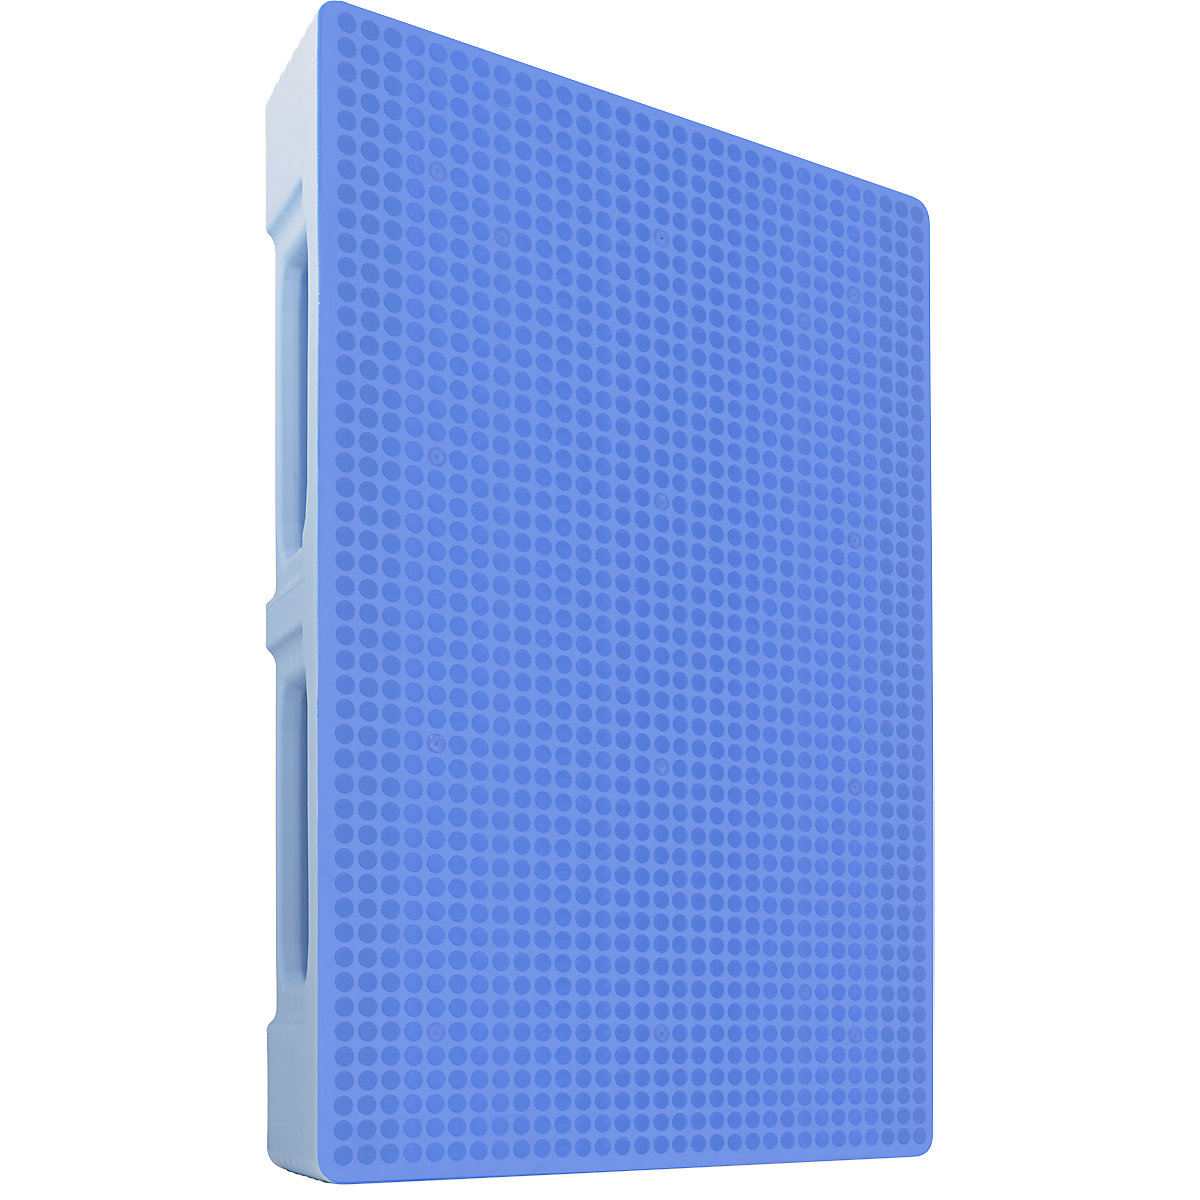 Higieniczna paleta antypoślizgowa, zamknięta, dł. x szer. 1200 x 800 mm, 3 płozy, jasnoniebieska-1